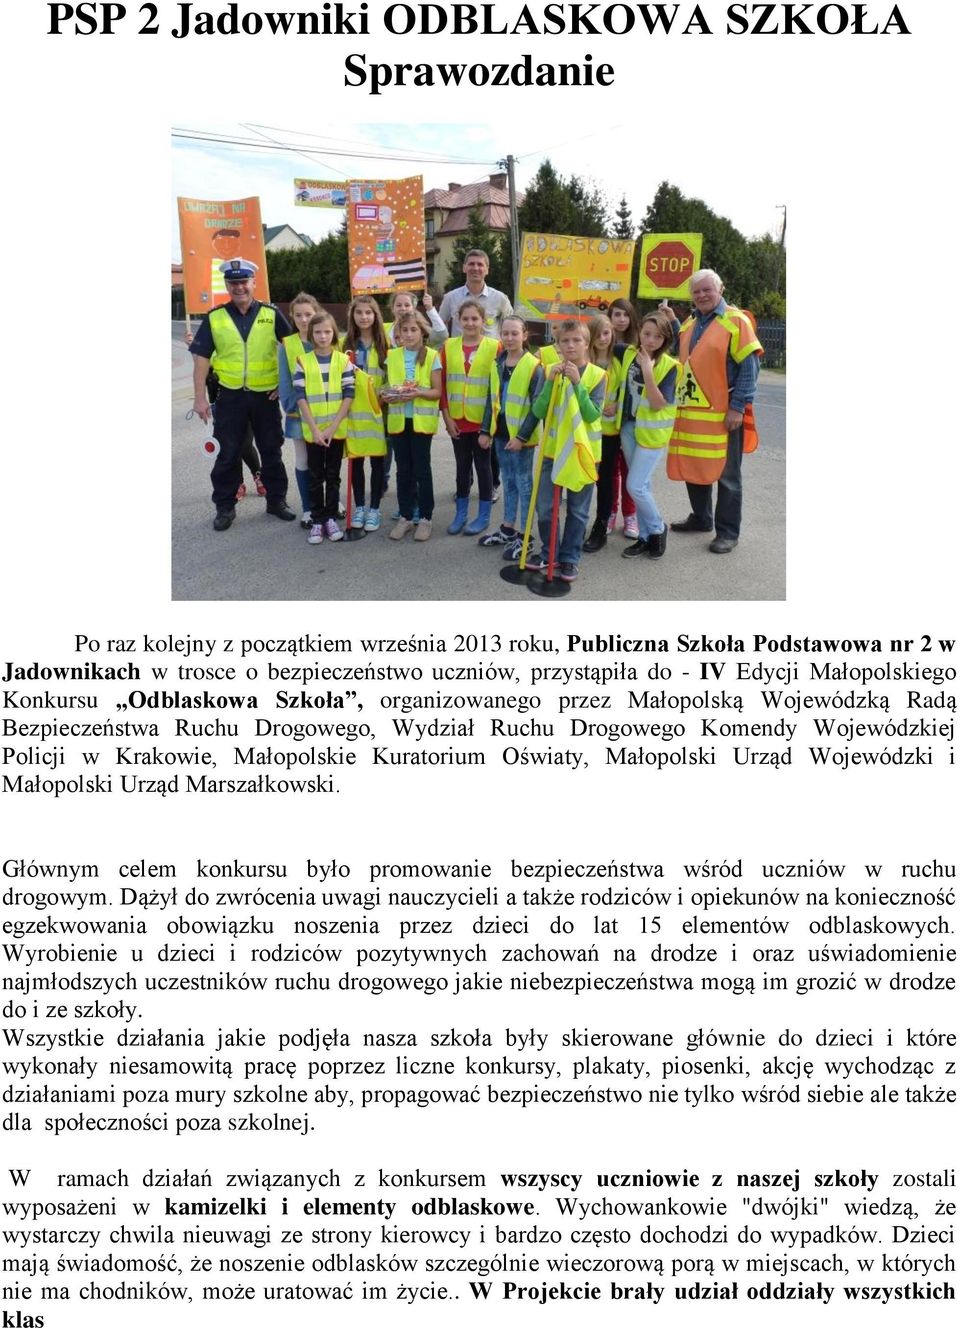 Małopolskie Kuratorium Oświaty, Małopolski Urząd Wojewódzki i Małopolski Urząd Marszałkowski. Głównym celem konkursu było promowanie bezpieczeństwa wśród uczniów w ruchu drogowym.